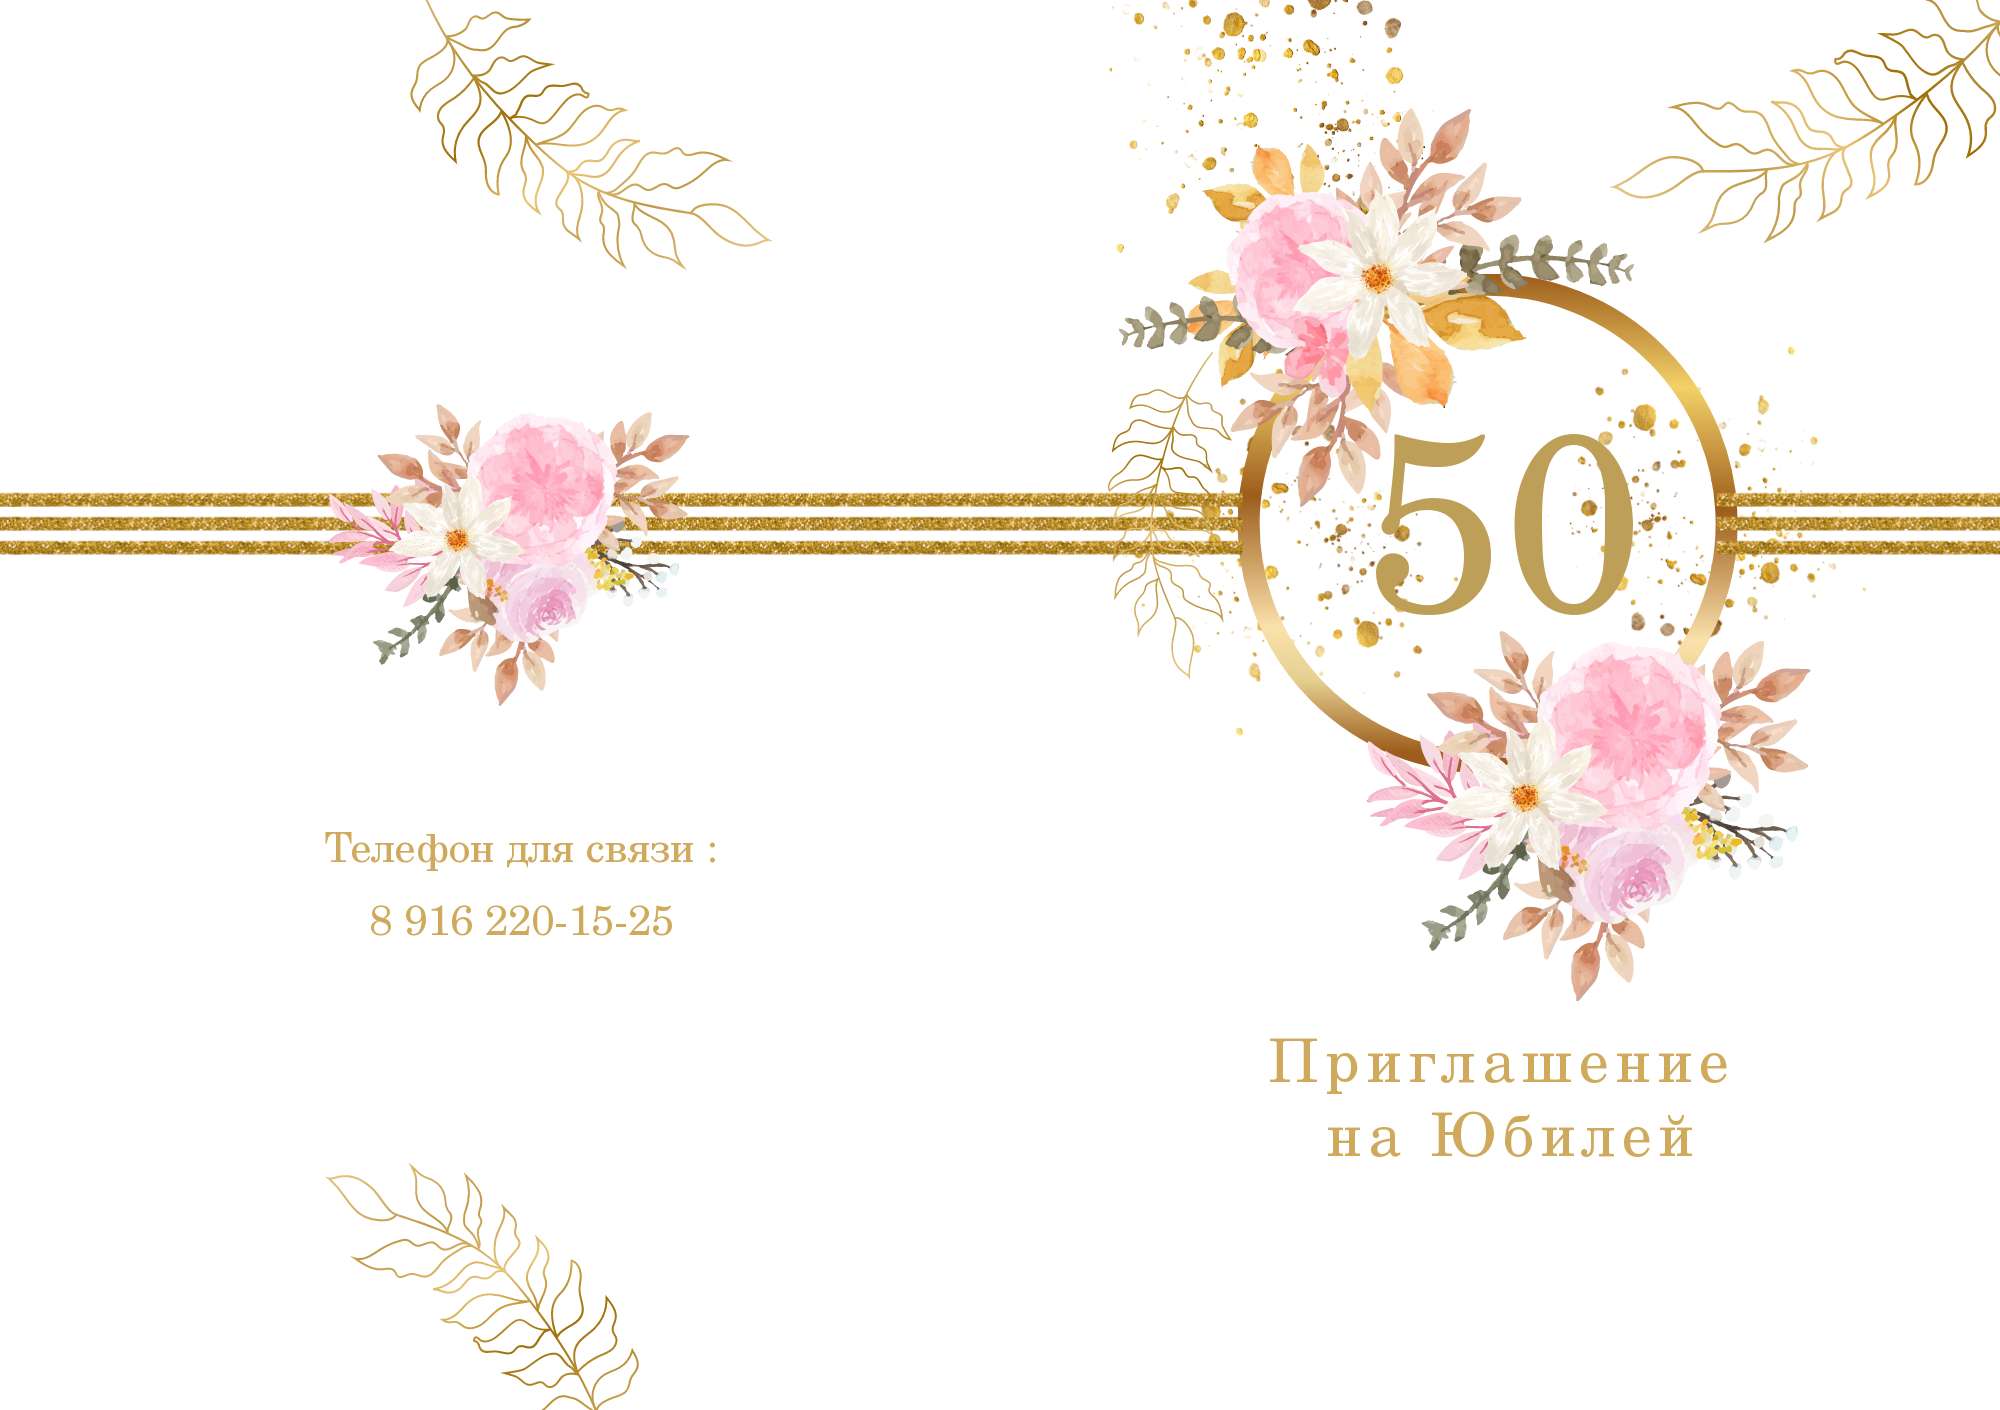 Приглашение на юбилей 50 лет онлайн бесплатно — пригласительные открытки